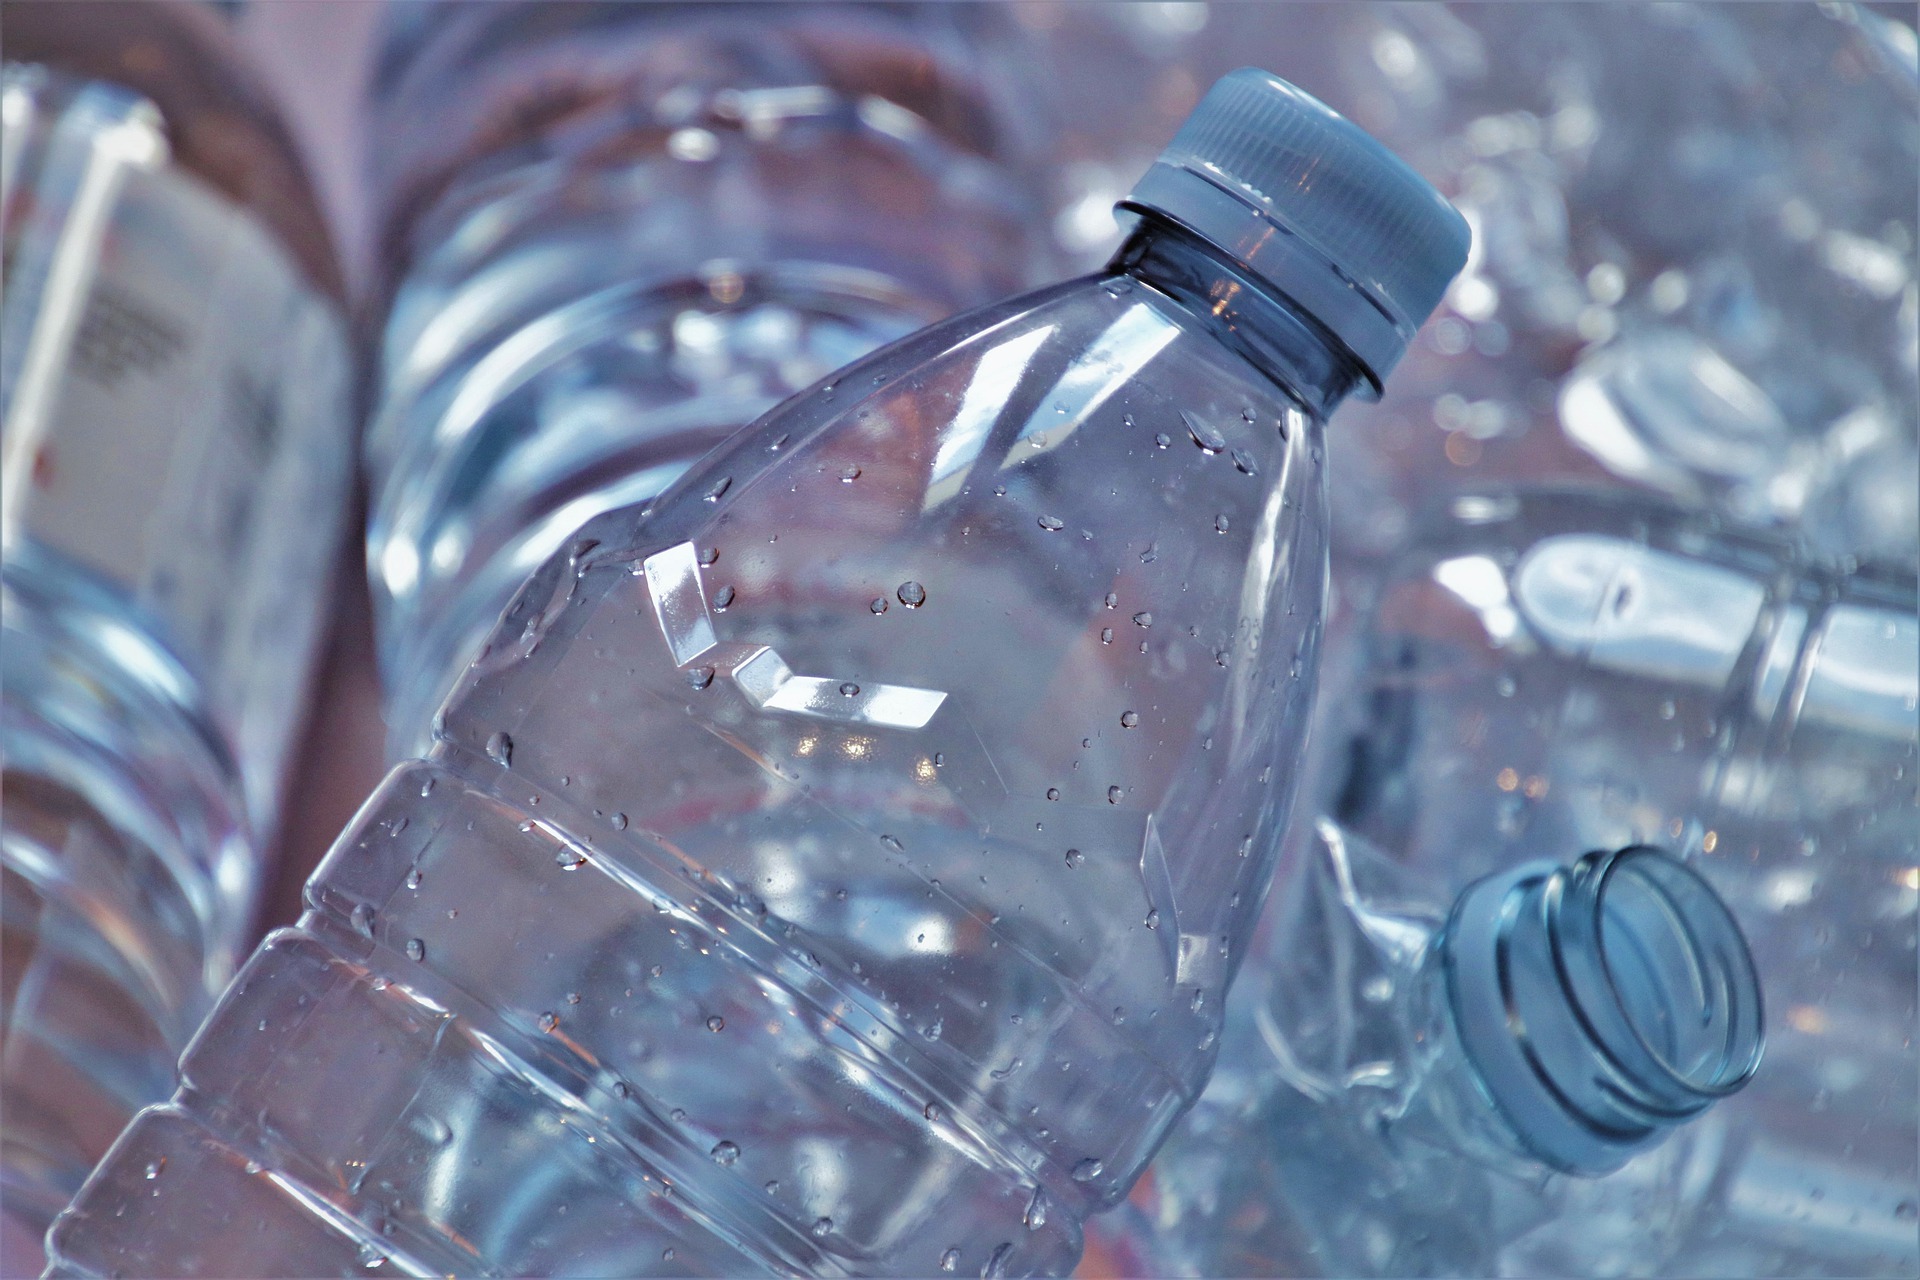 Reuse of plastic bottles